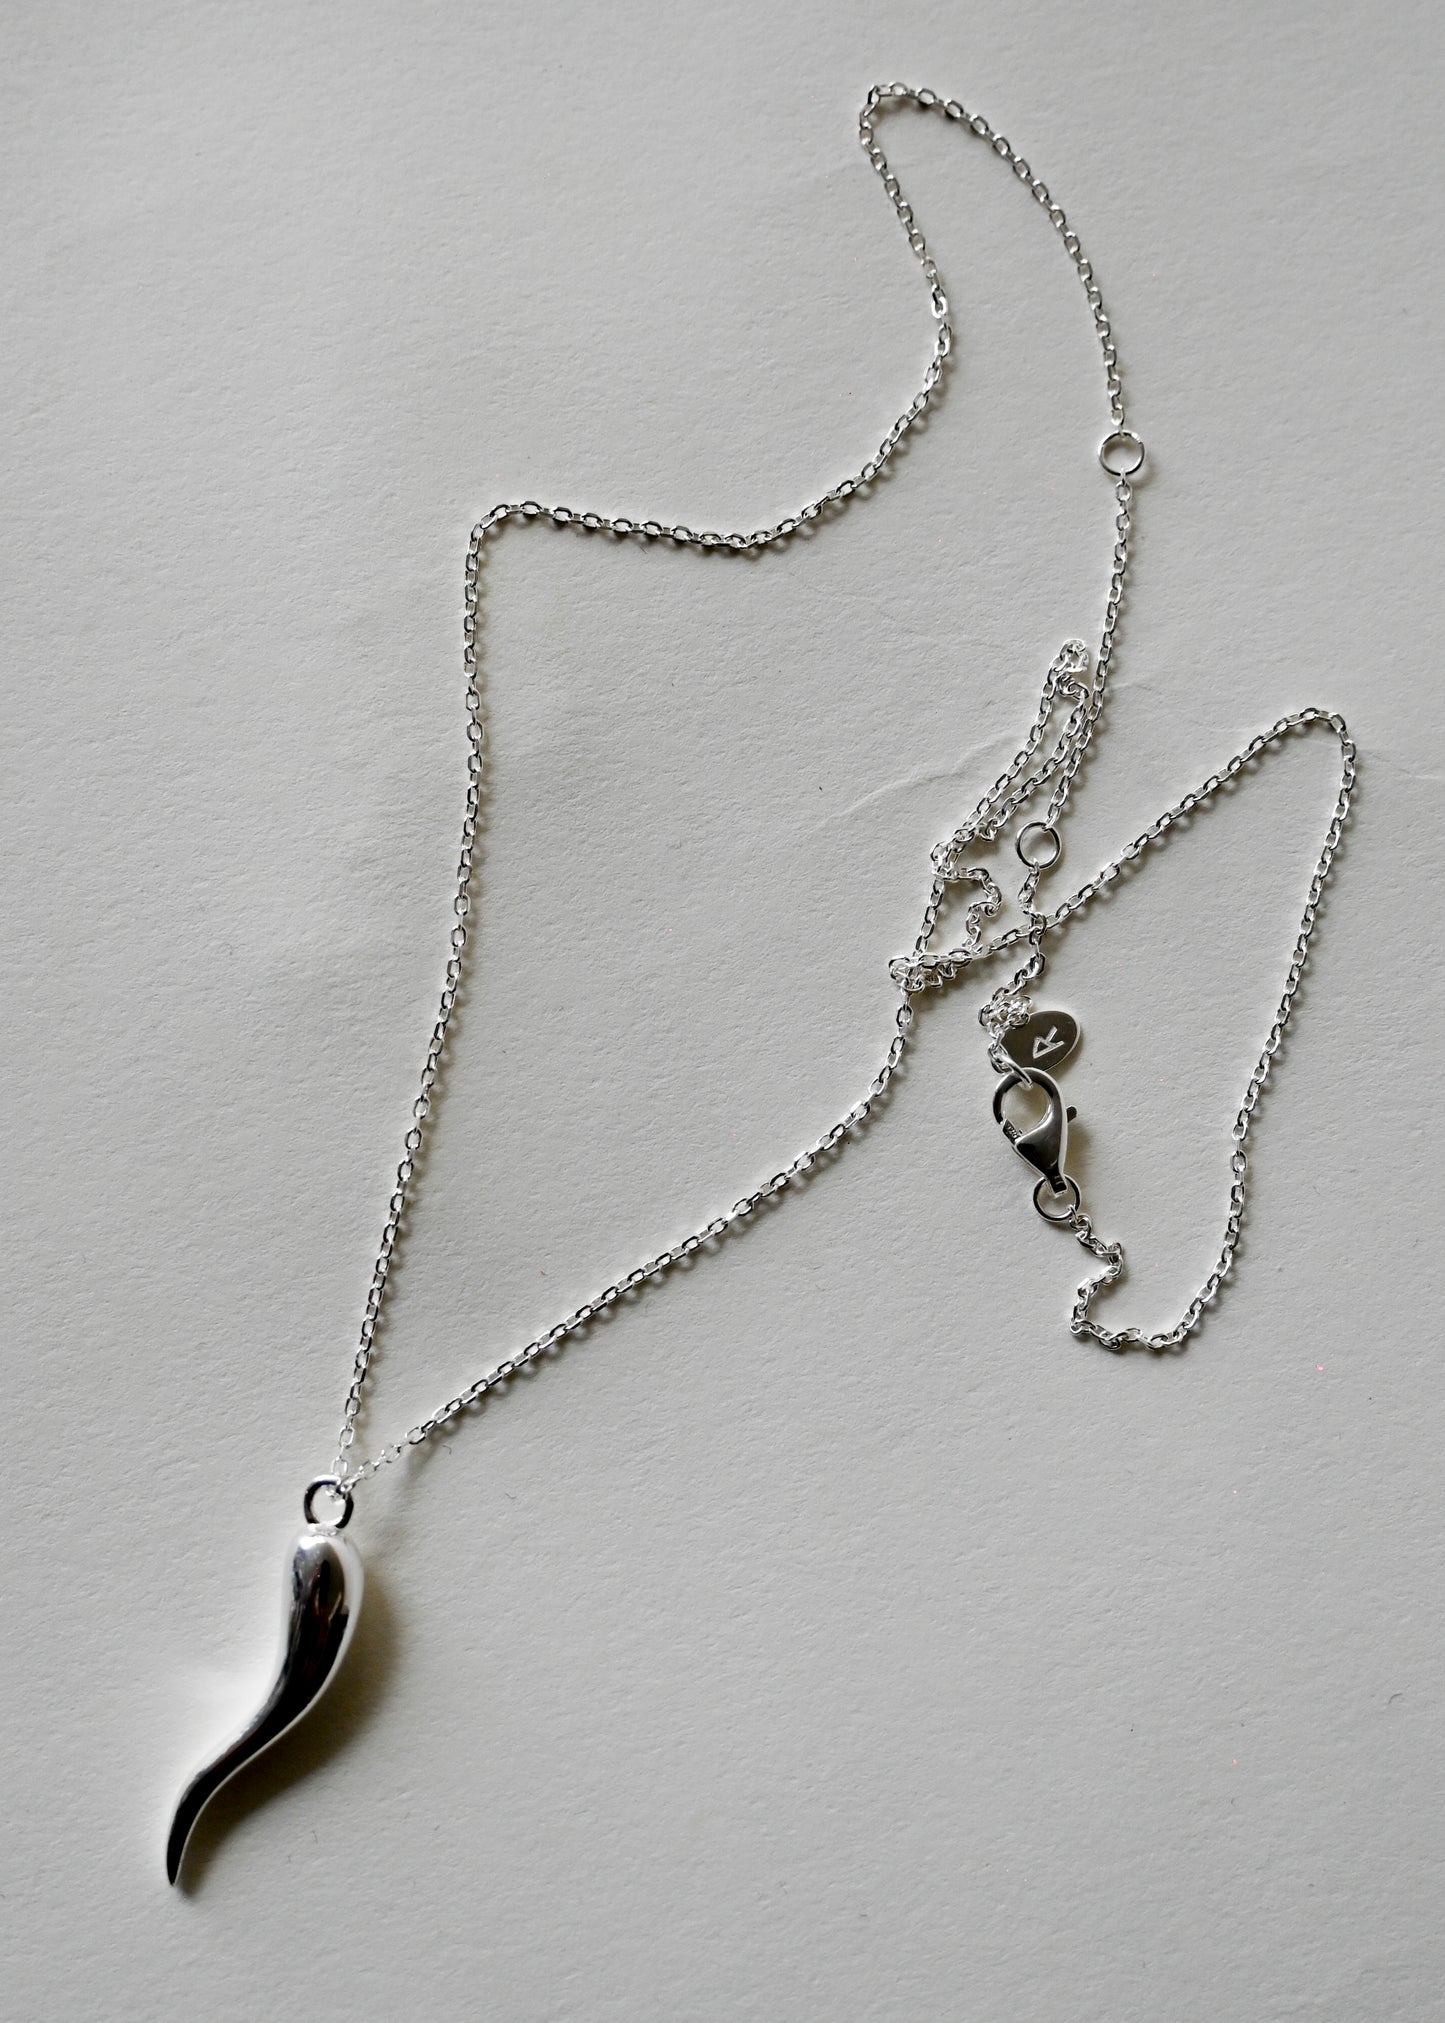 Italian Horn Charm Necklace [M] - 925